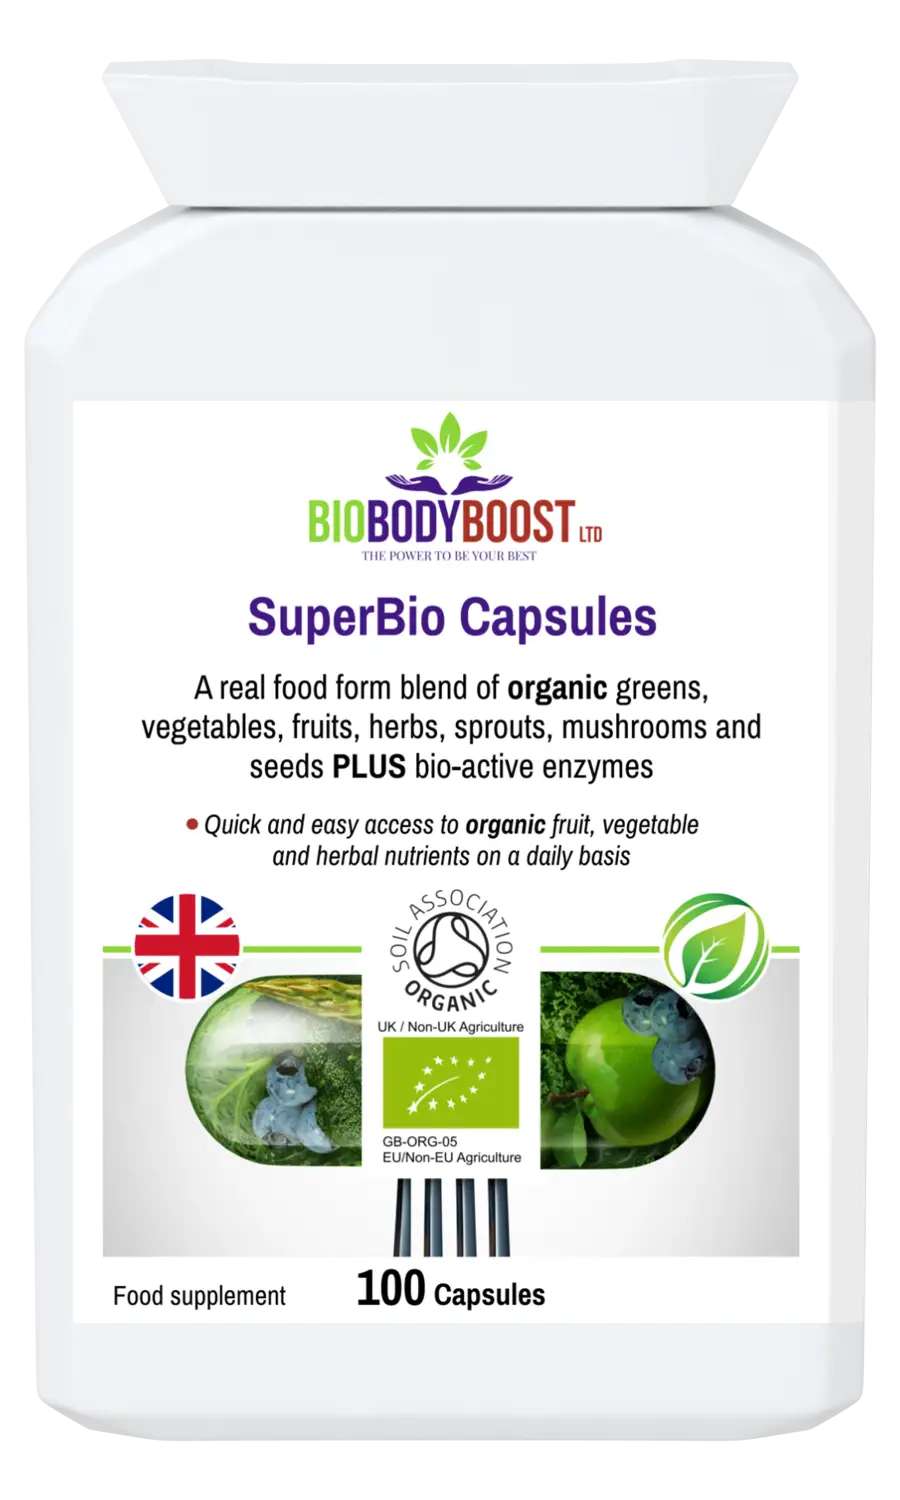 Superbio capsules vegan organic foods blend - vitamins & supplements